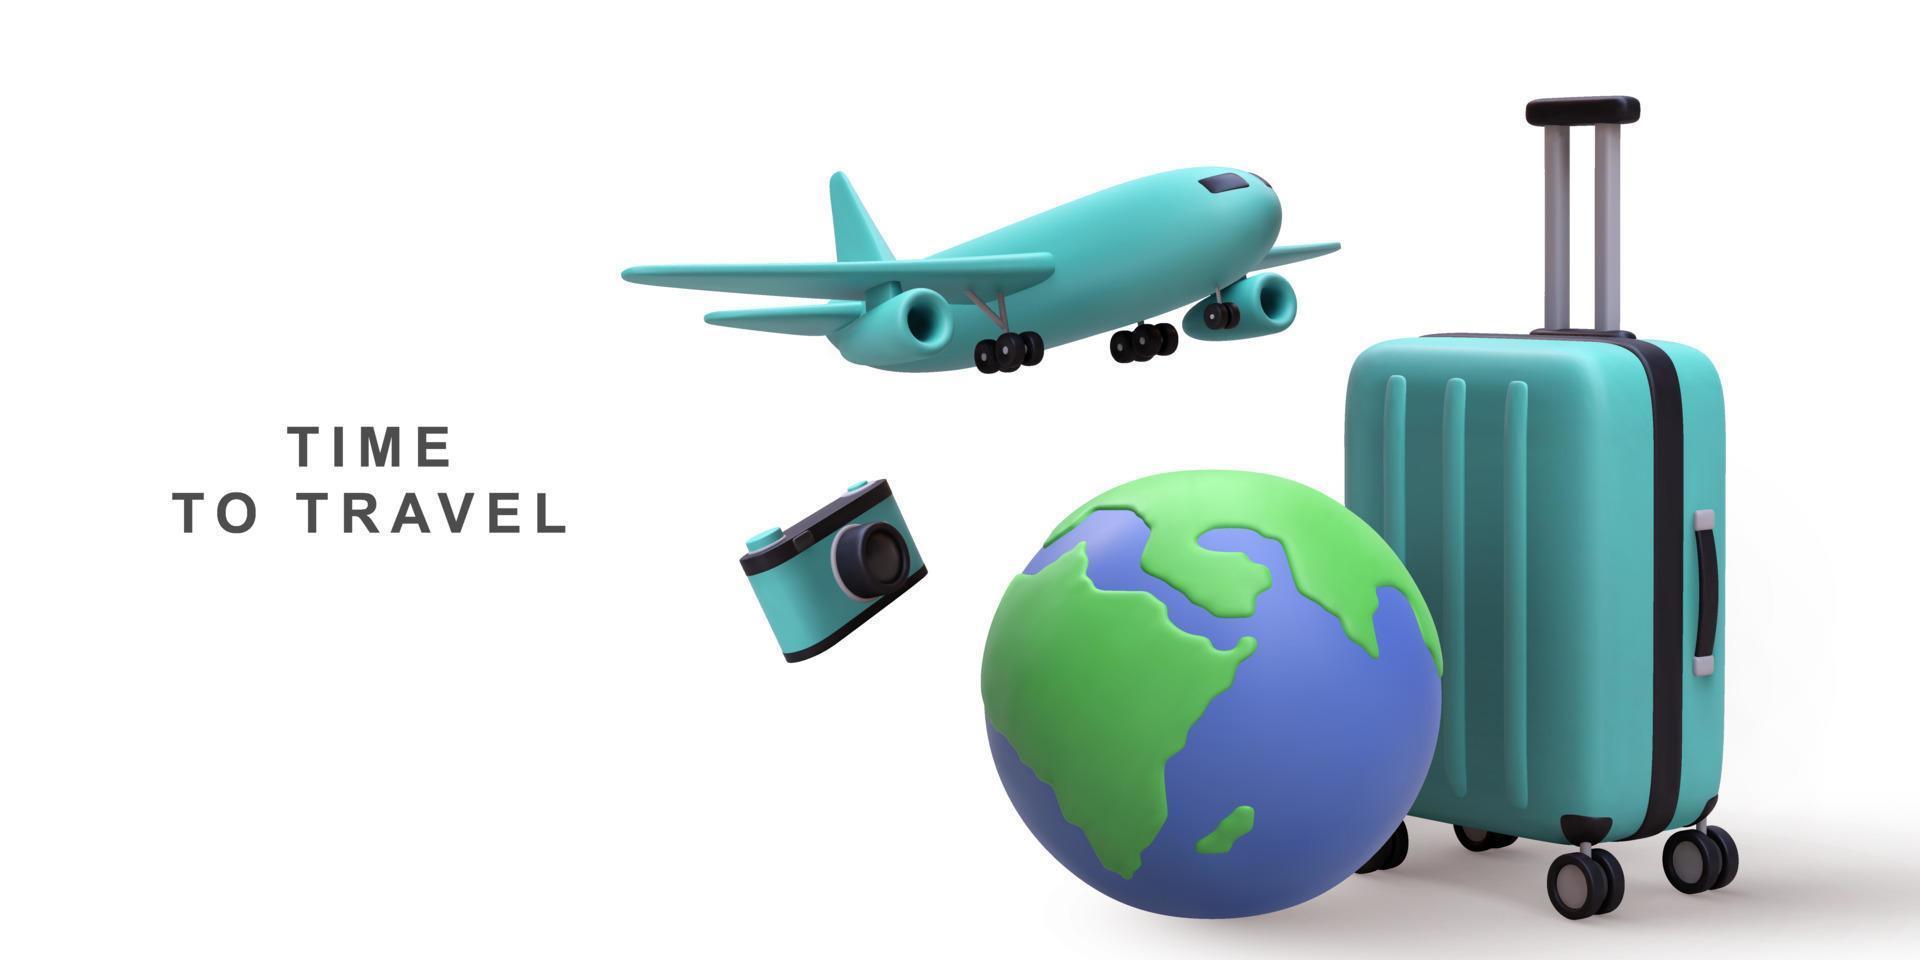 3d realista globo mapa e mala de viagem com embarque avião viagem turismo avião viagem planejamento mundo percorrer. vetor ilustração.